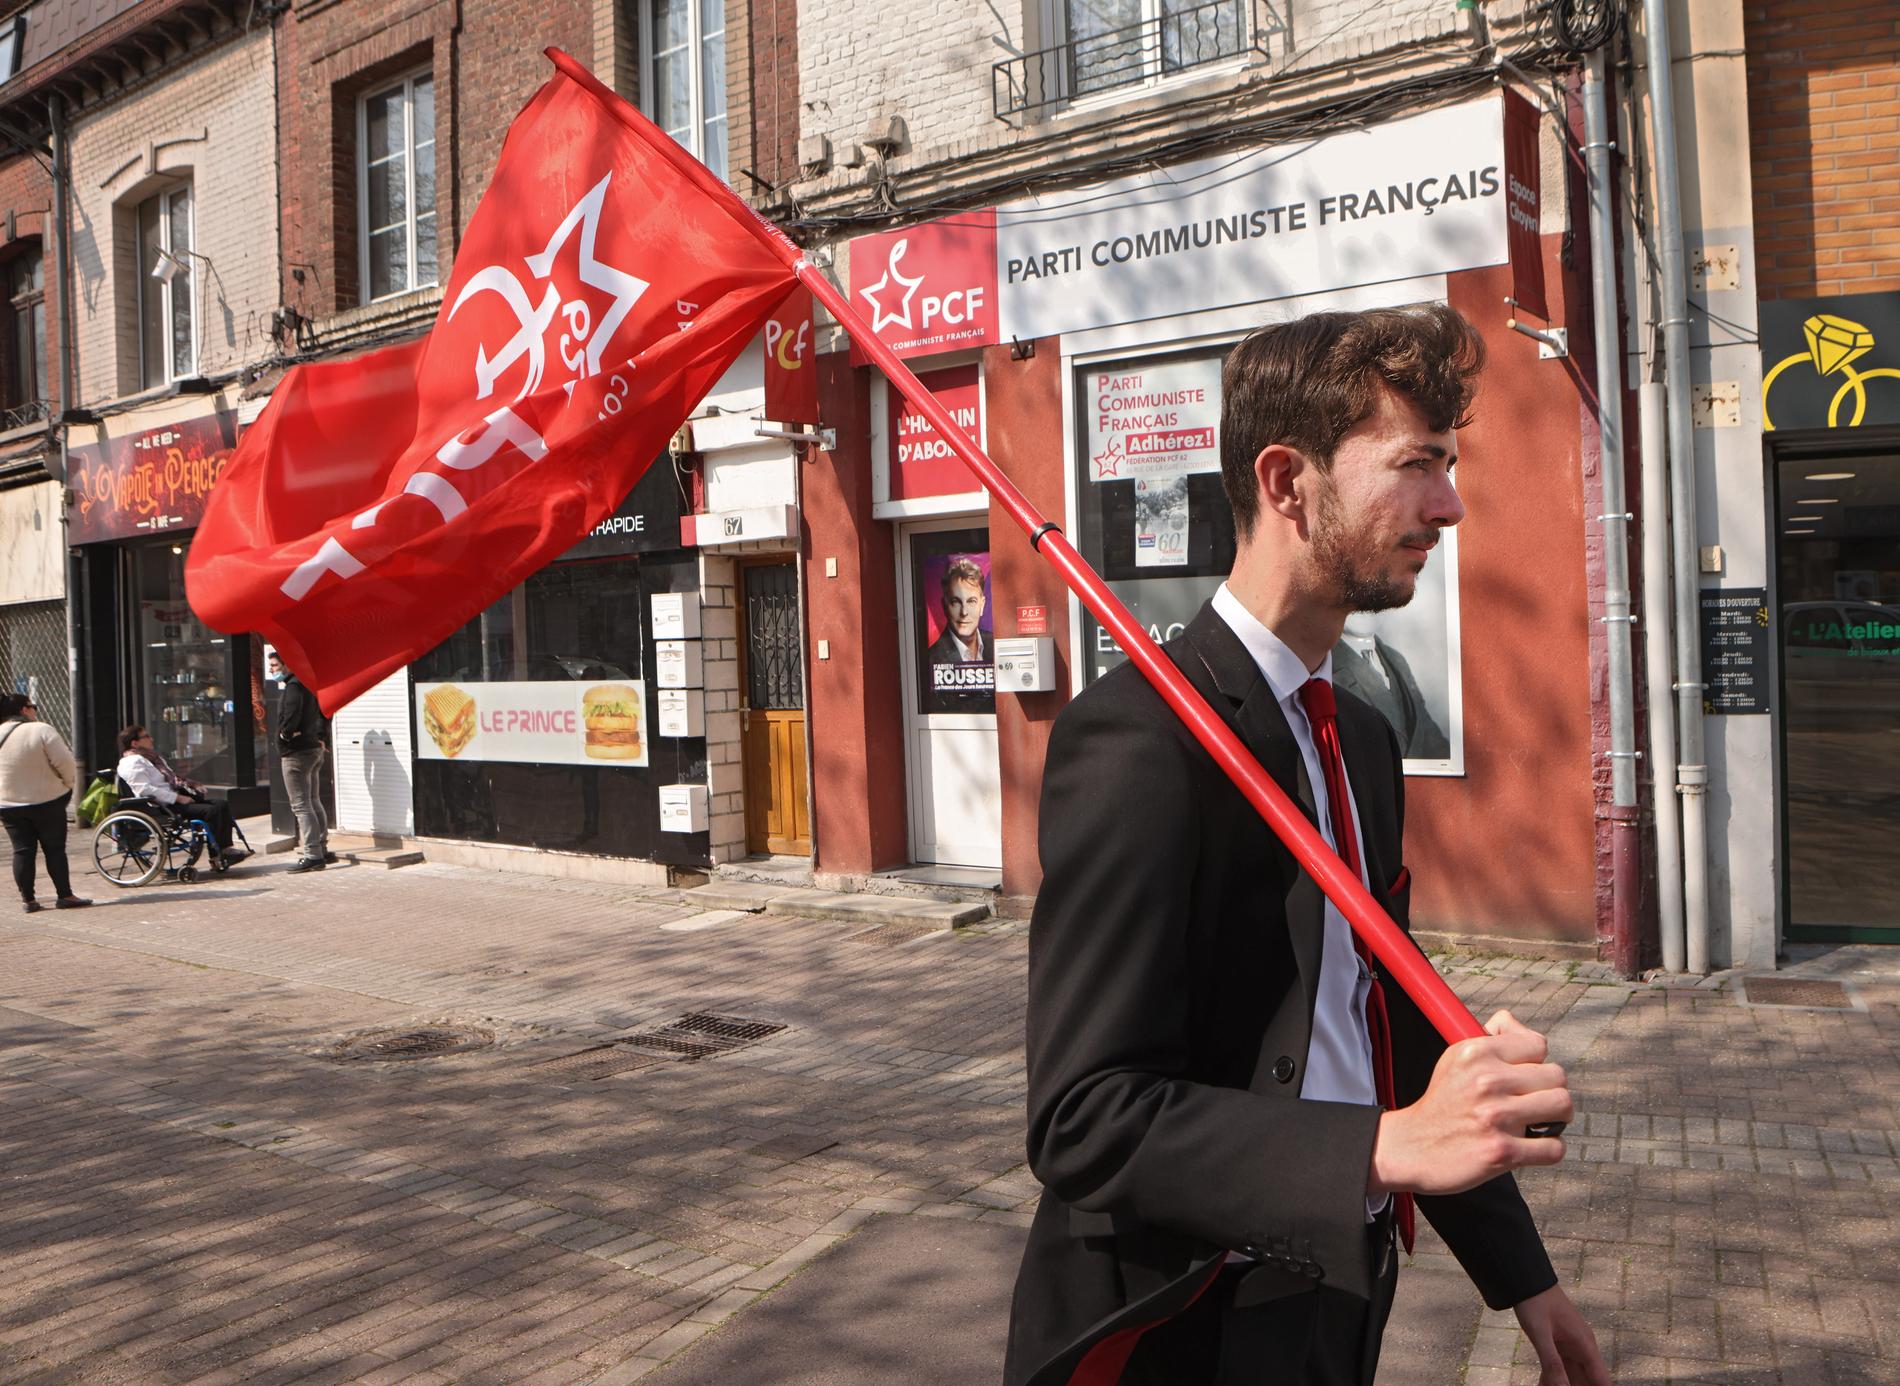 19-åriga kommunisten Evan Bourgouis på väg till en demonstration.